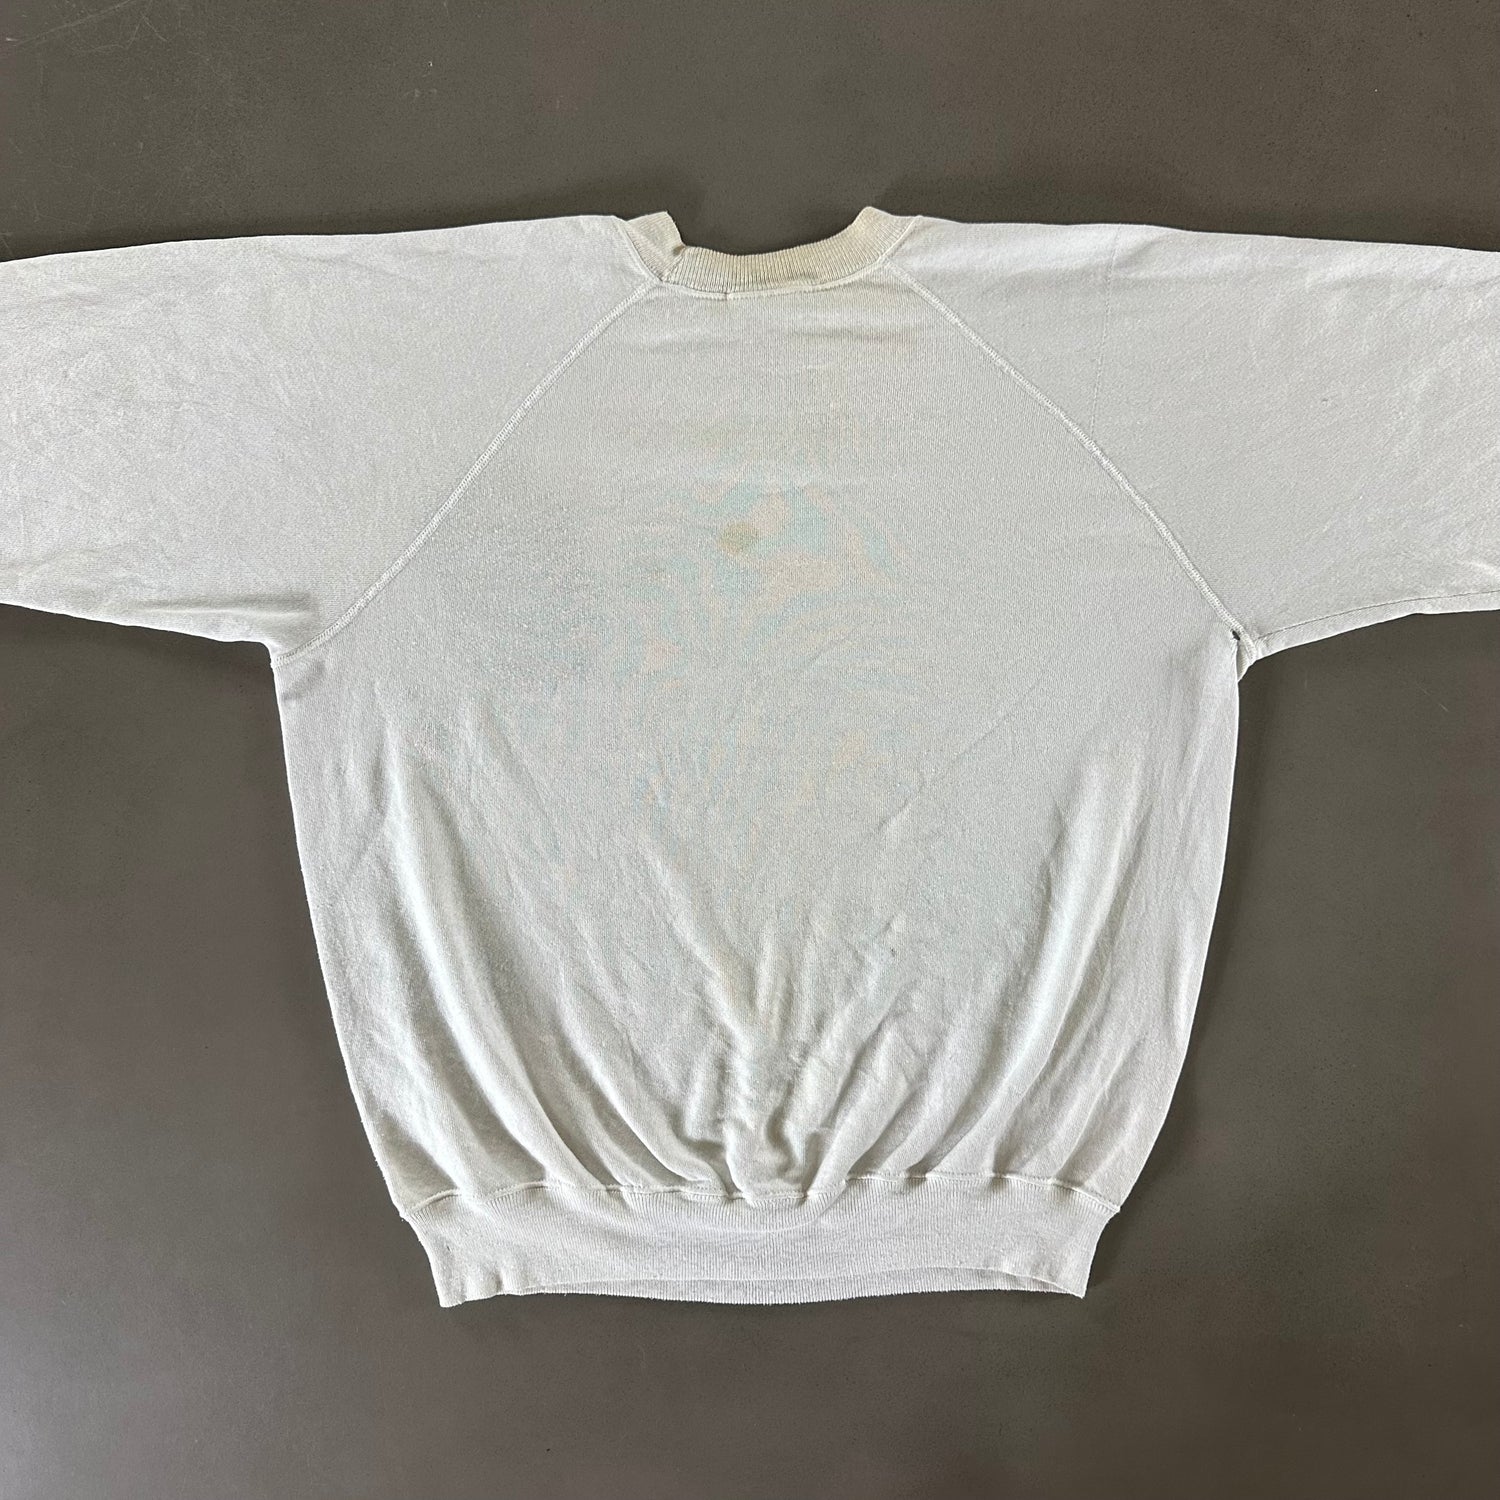 Vintage 1980s Cleveland Browns Sweatshirt size XL